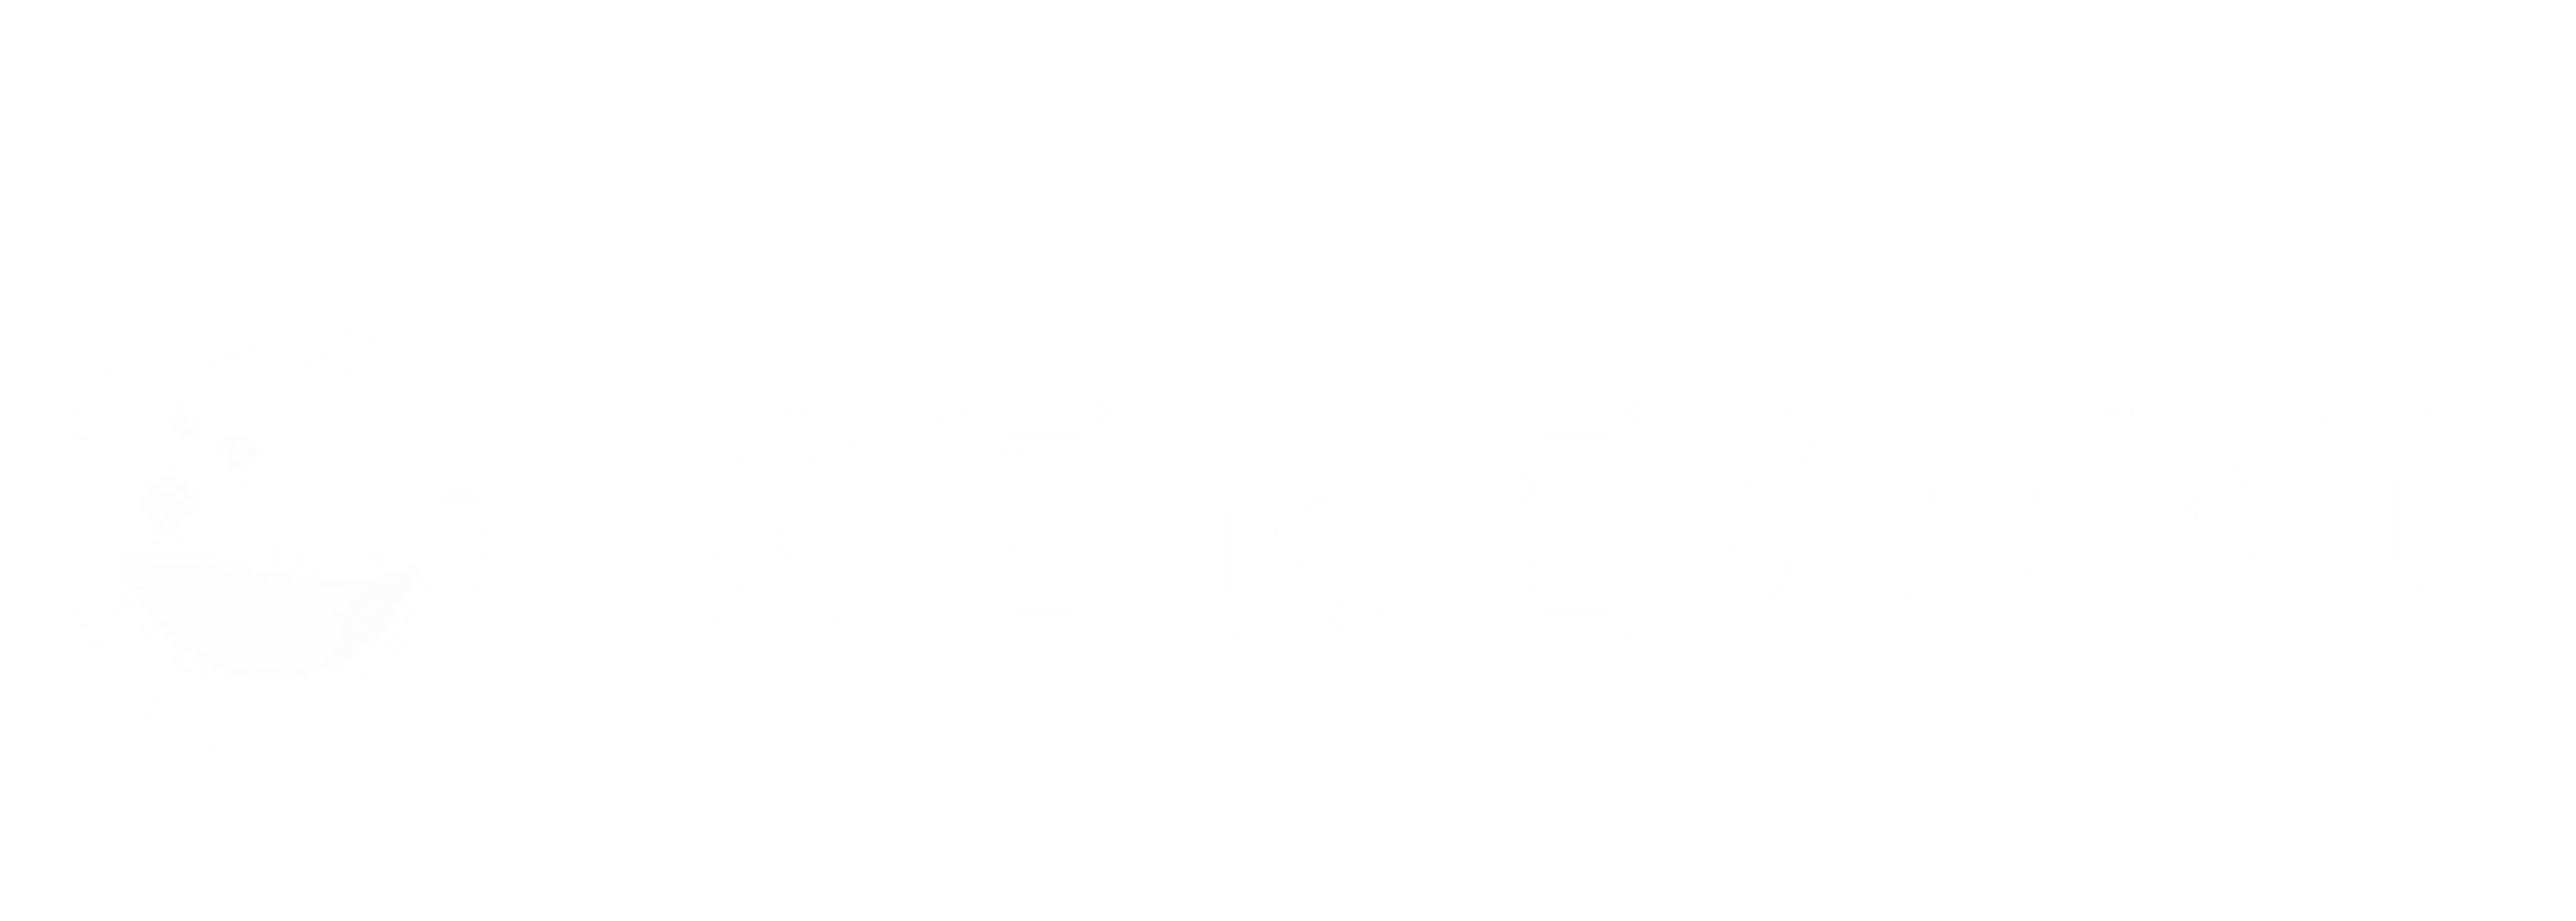 Genemod logo